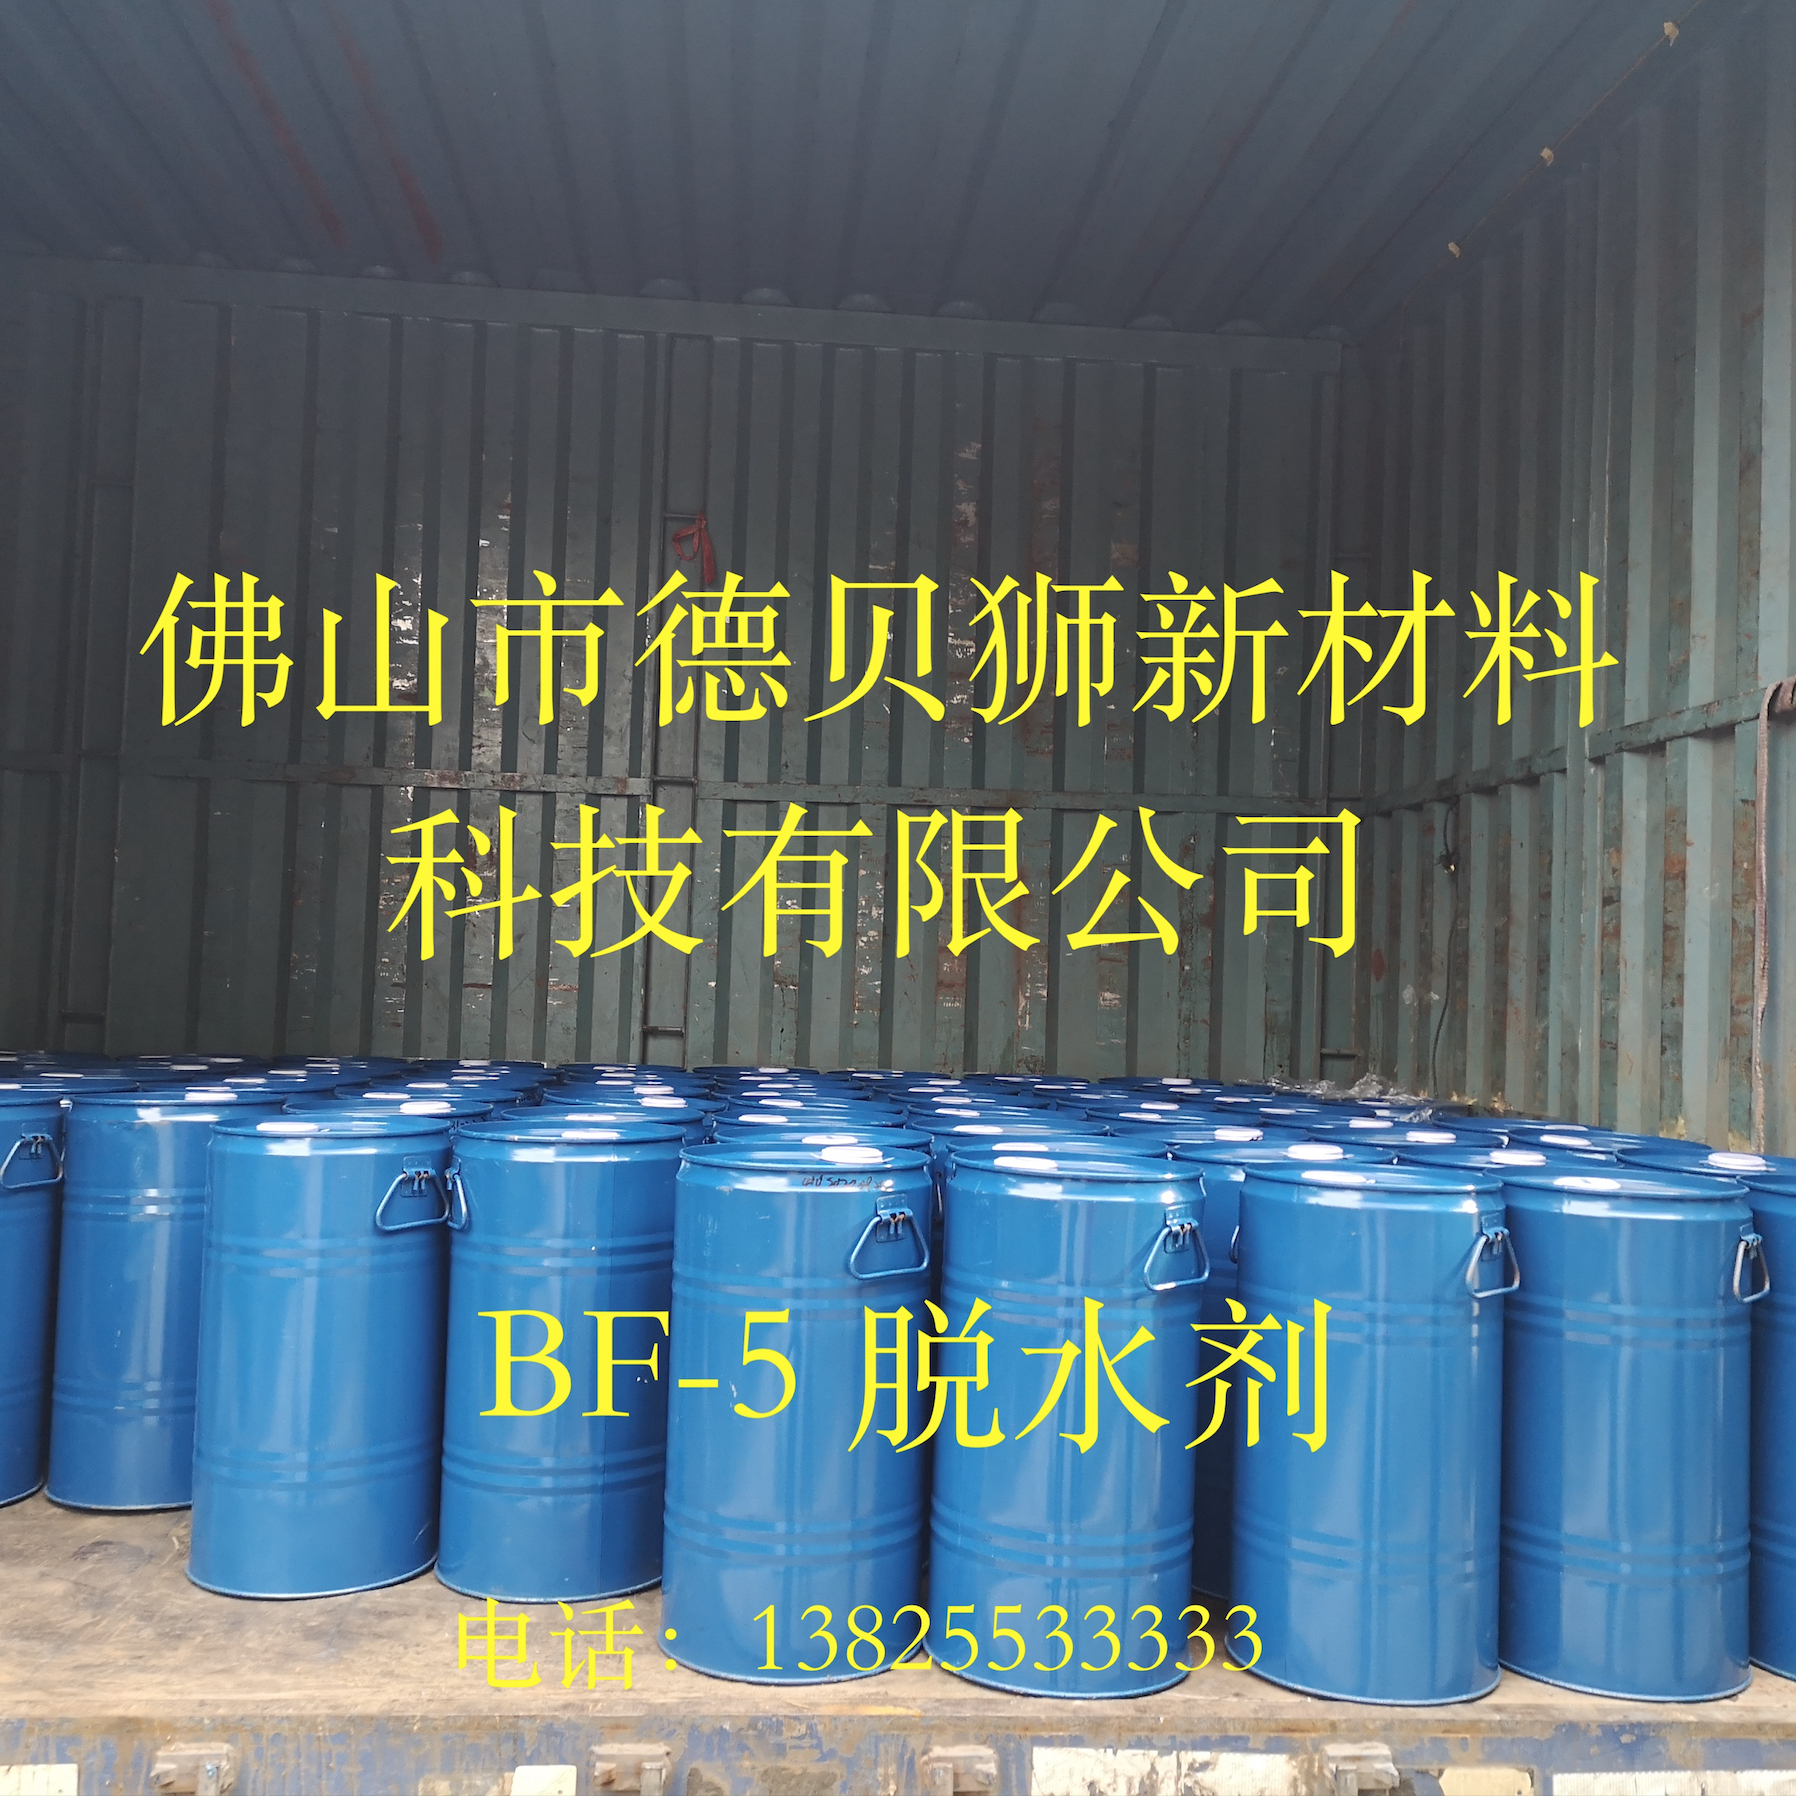 德贝狮BF-5脱水剂聚氨酯PU脱水剂厂家固化剂吸水剂TI吸水剂OF吸水剂